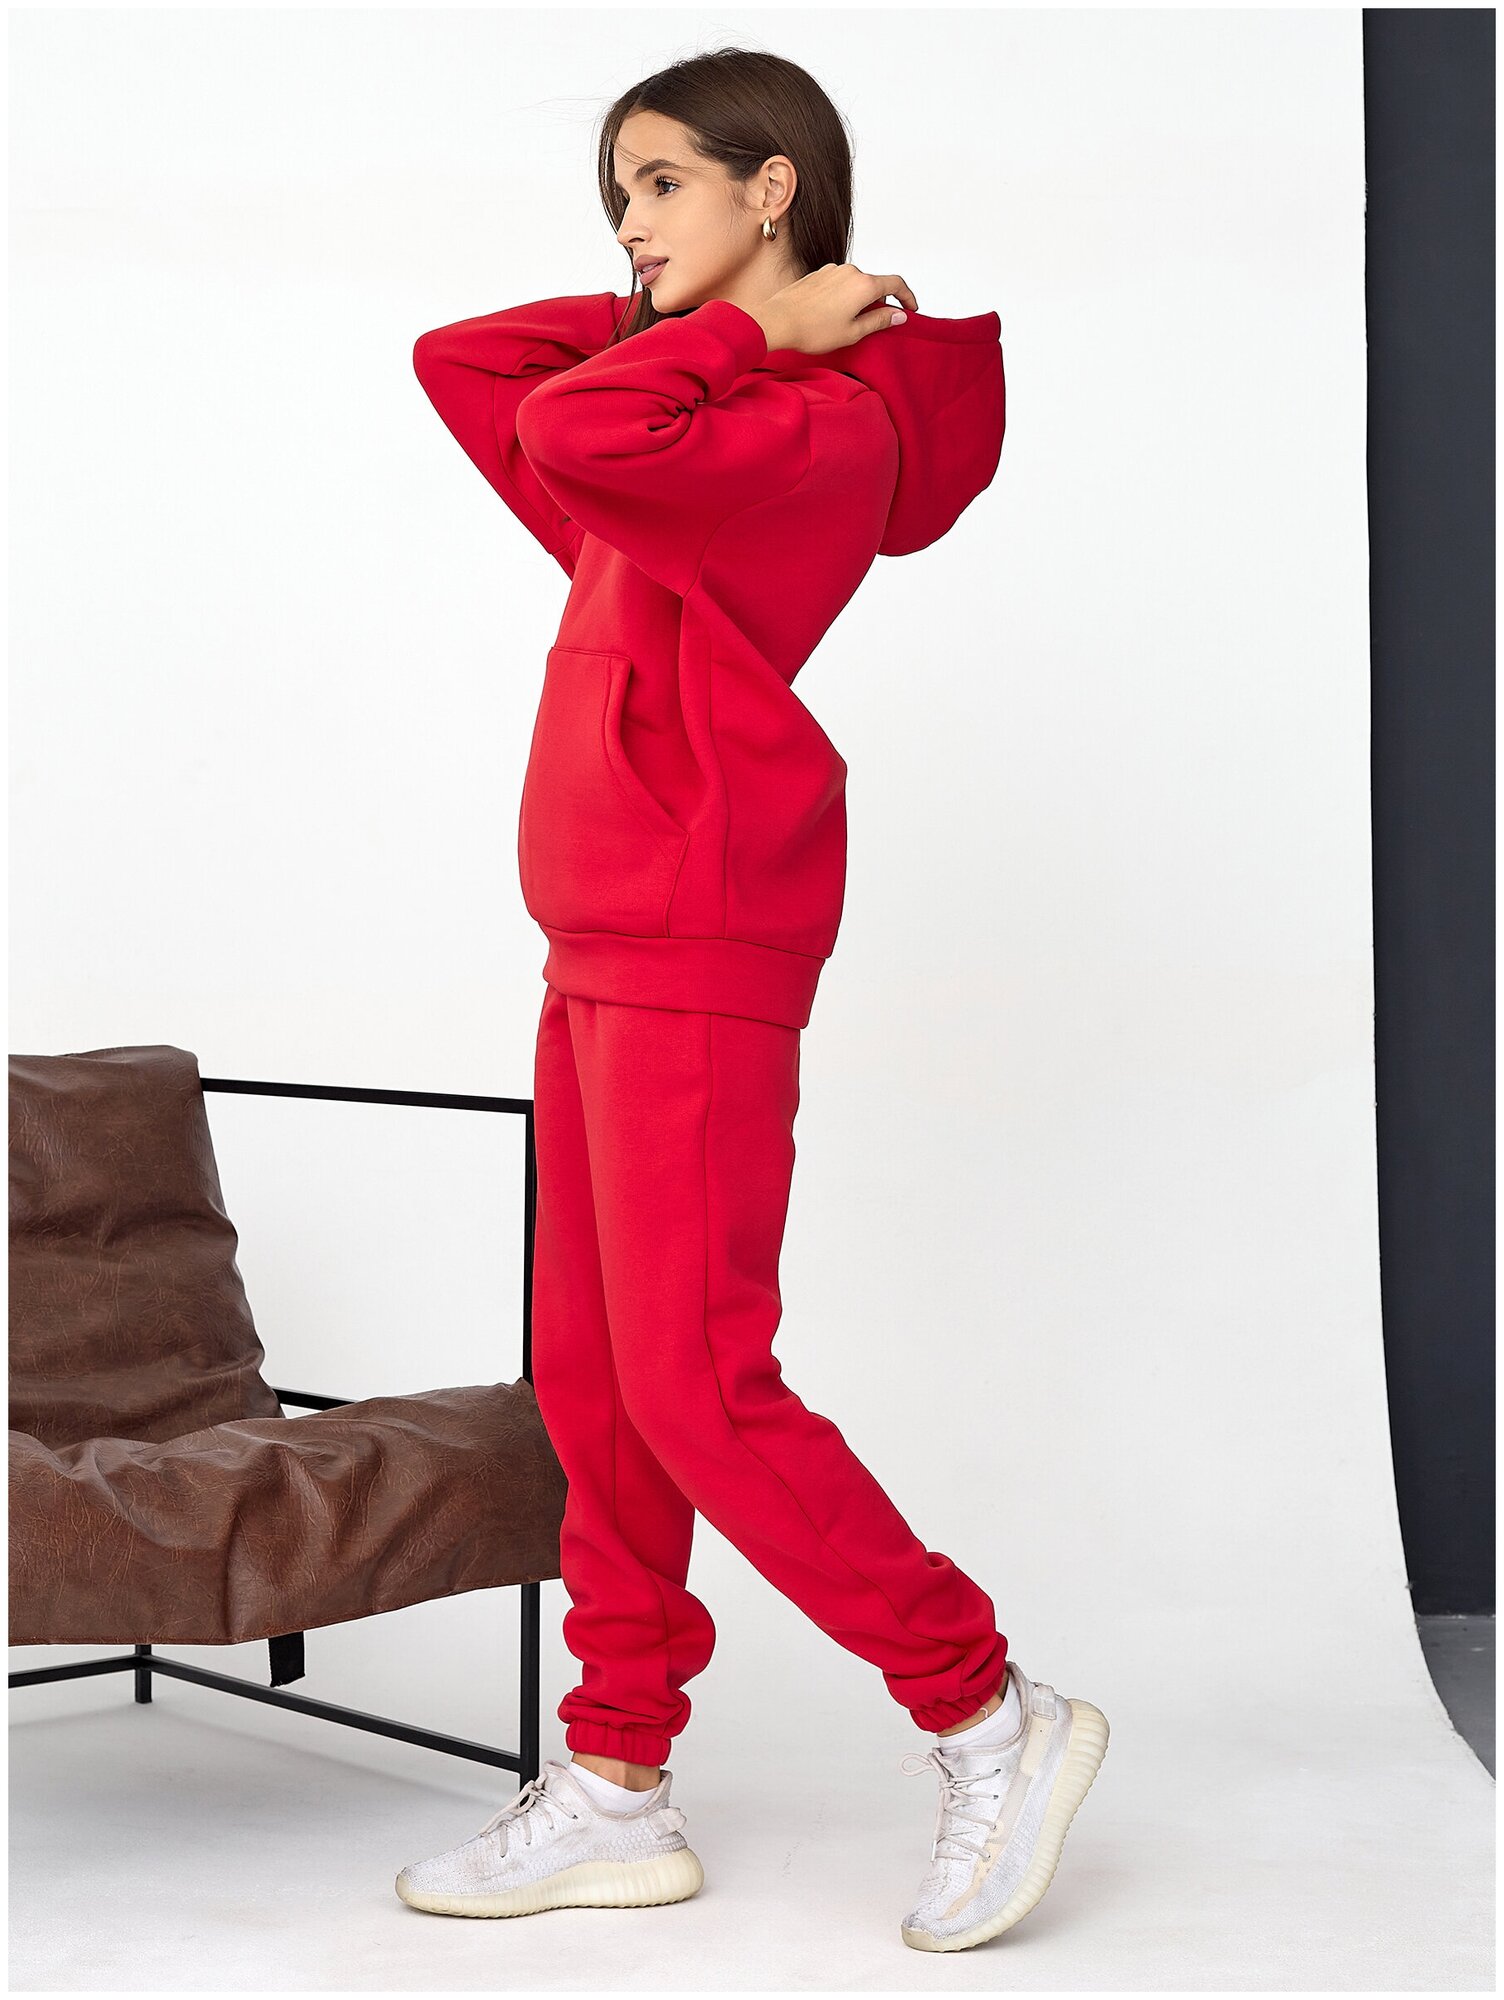 Костюм Промдизайн, толстовка и брюки, спортивный стиль, оверсайз, утепленный, размер 50, красный - фотография № 5